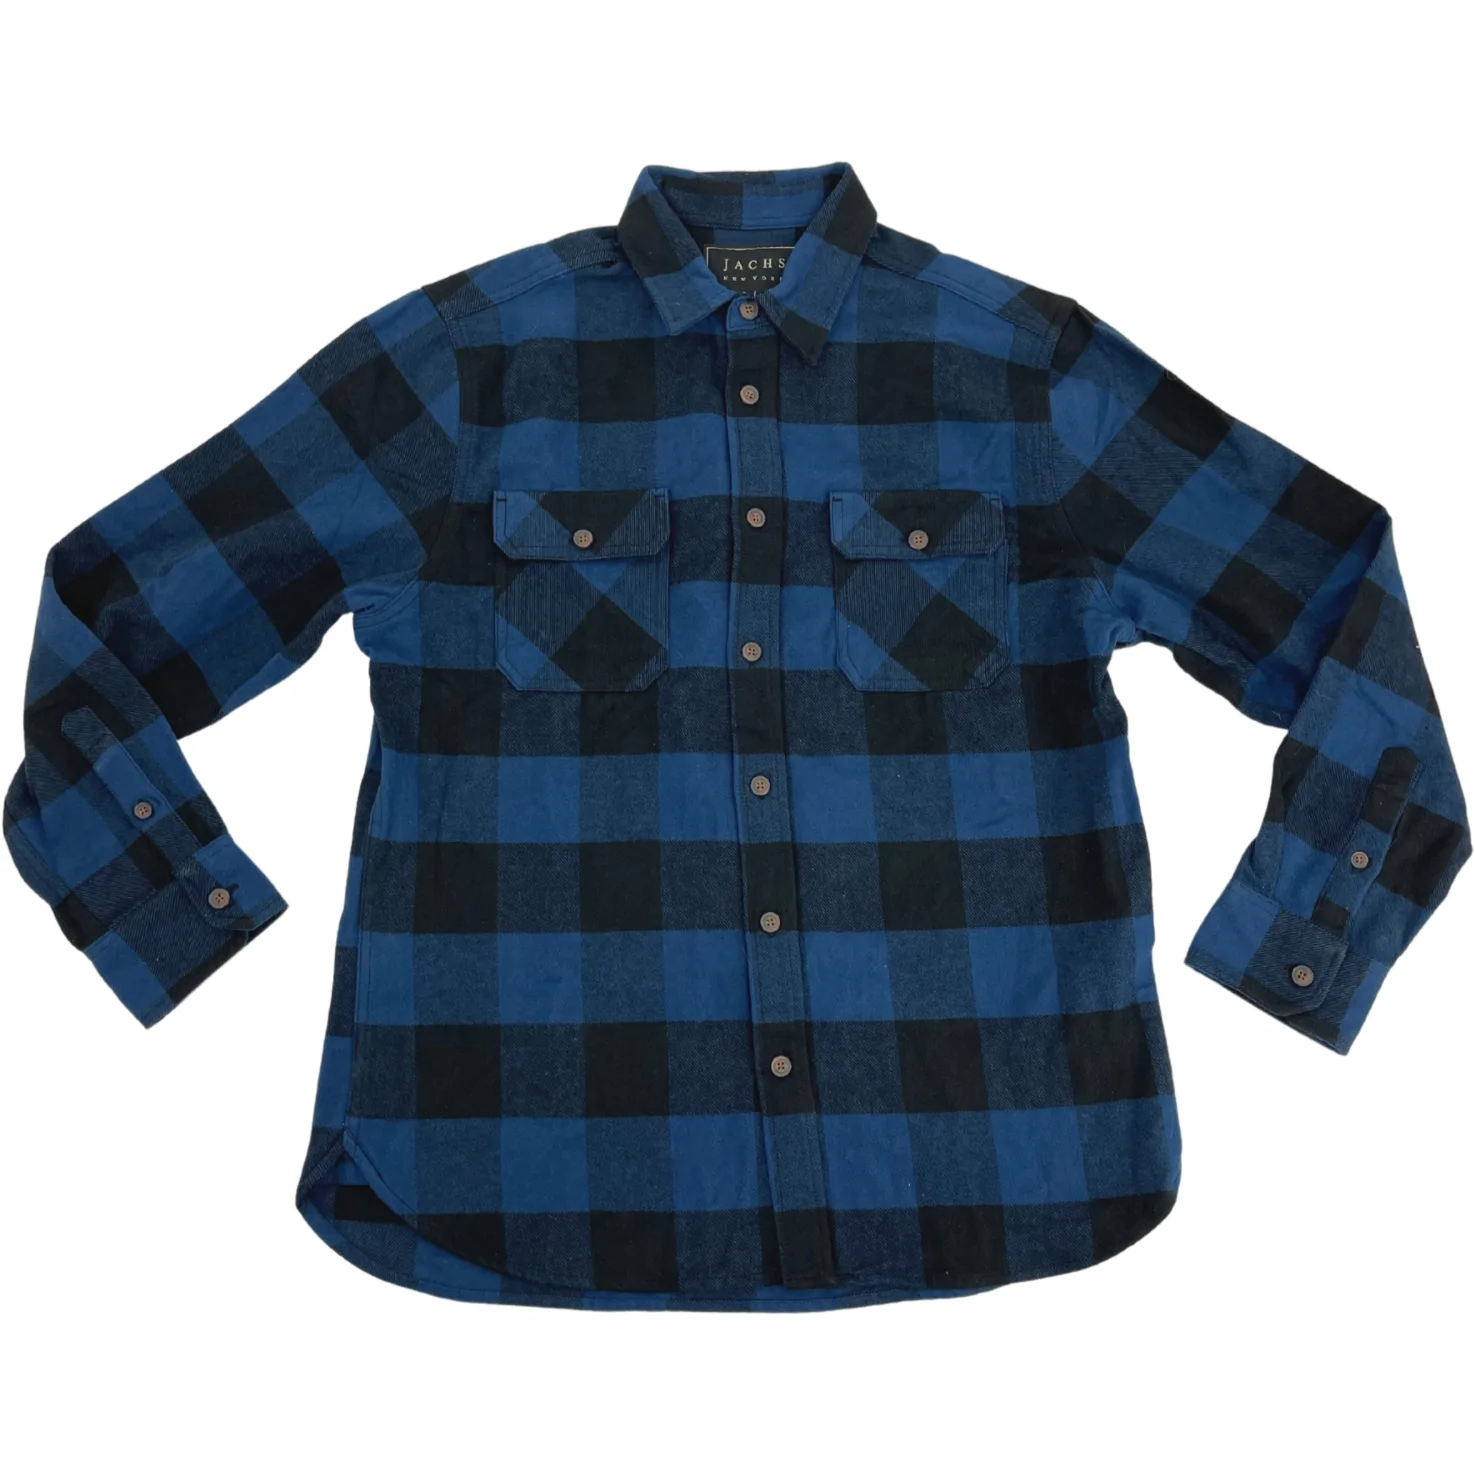 Jachs Men's Long Sleeve Shirt / Blue & Black Plaid / Size Large